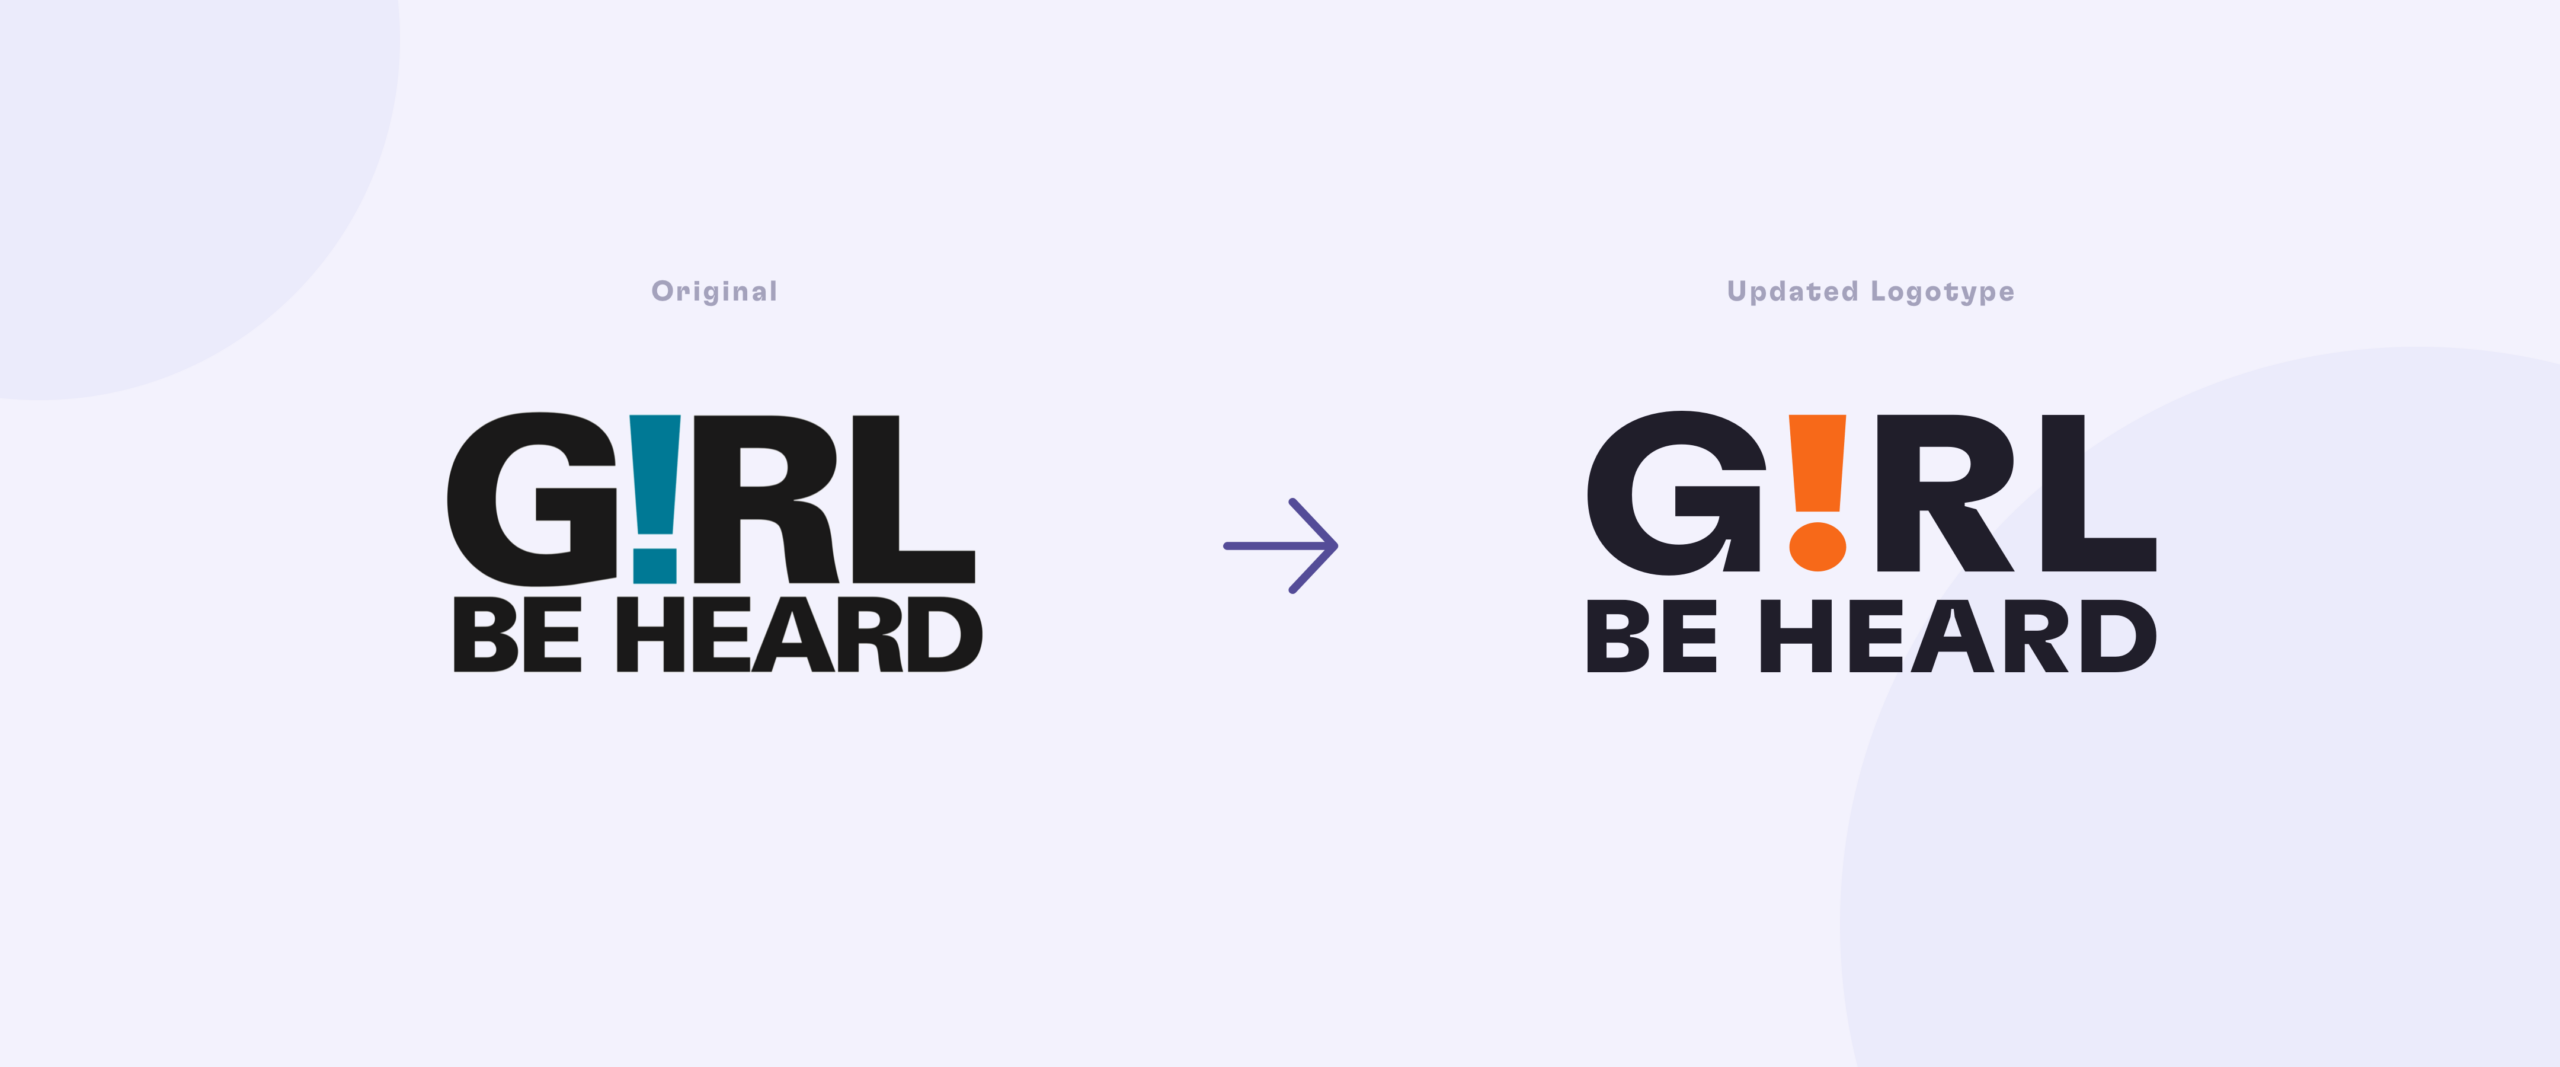 Girl Be Heard Original vs. Updated Logotype